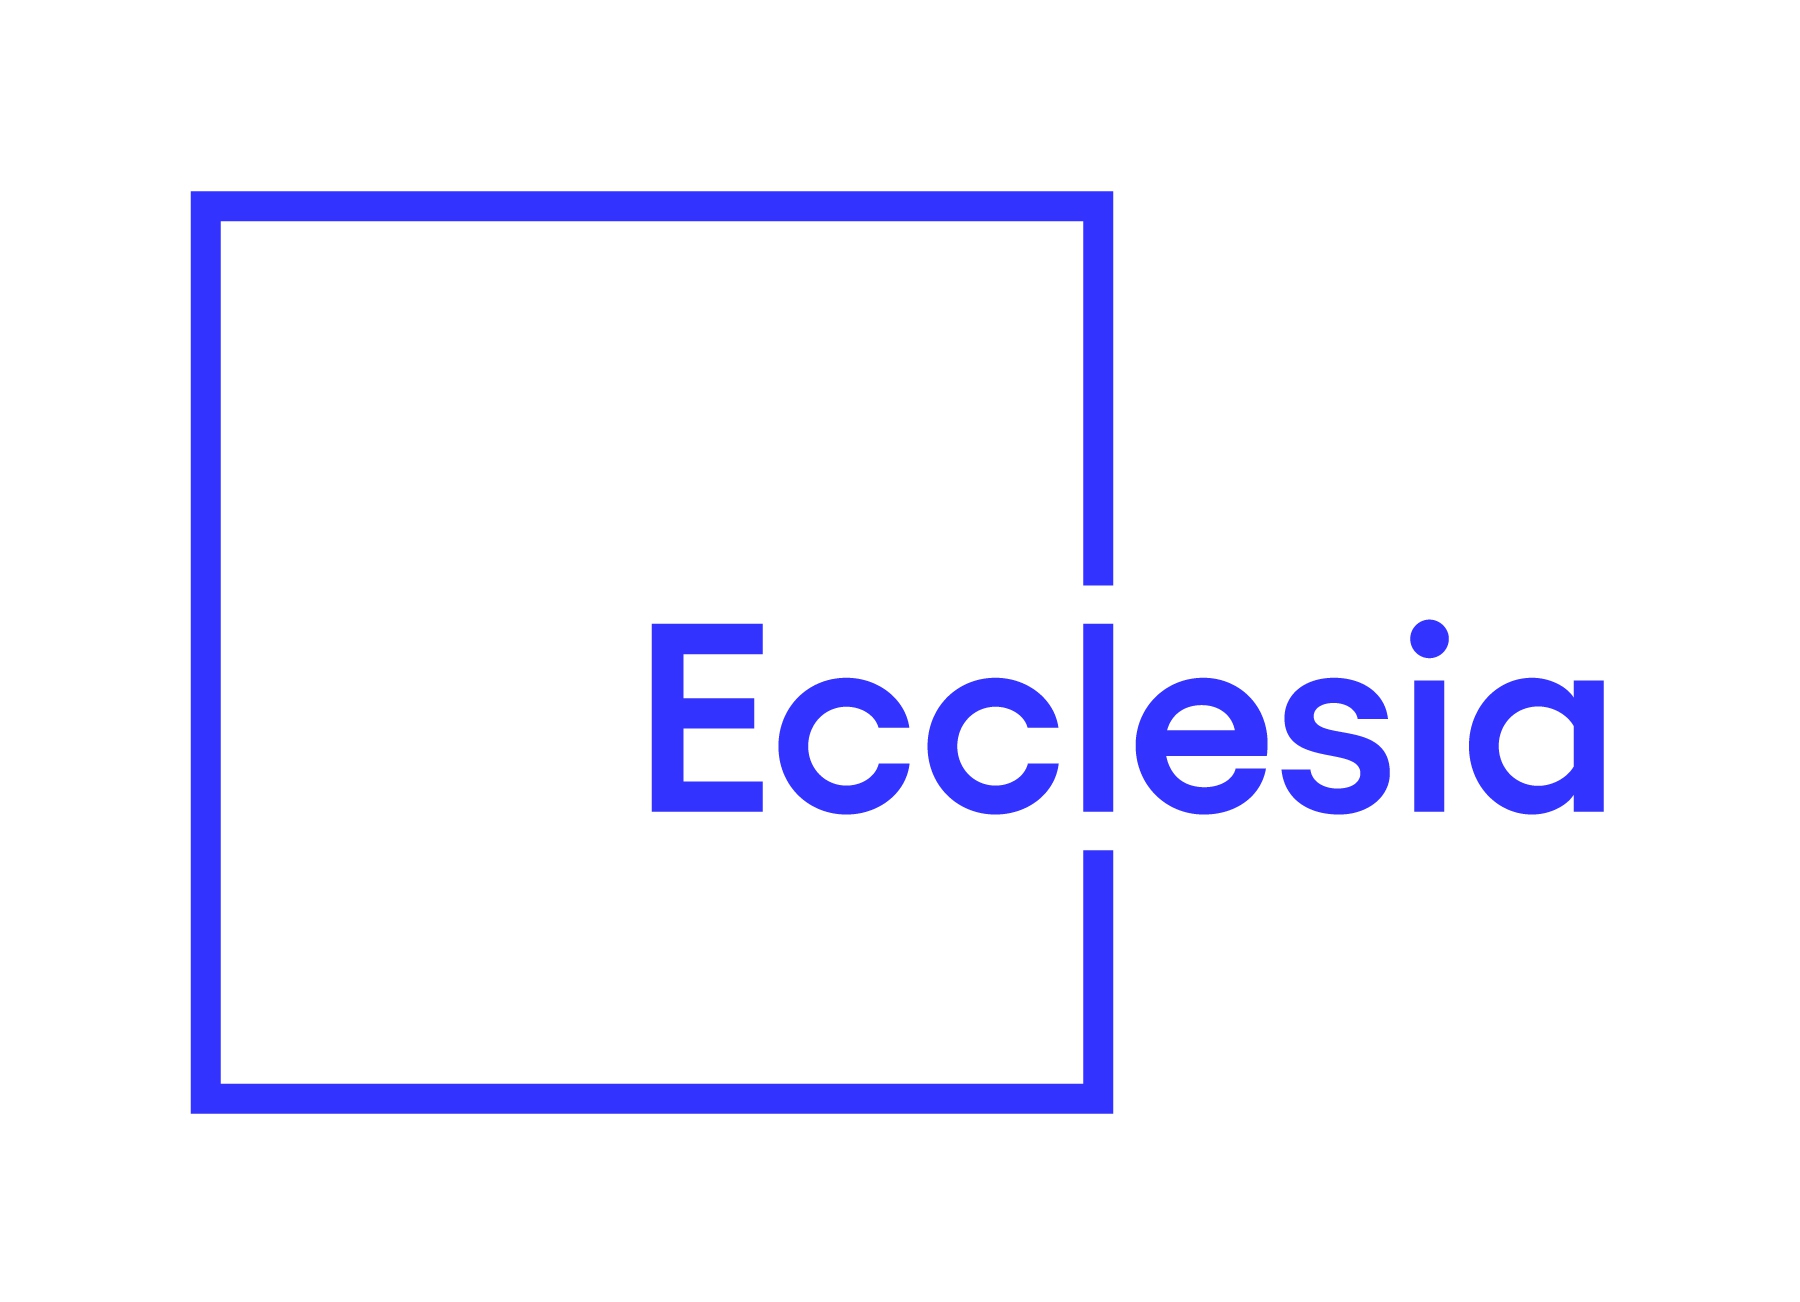 Ecclesia 